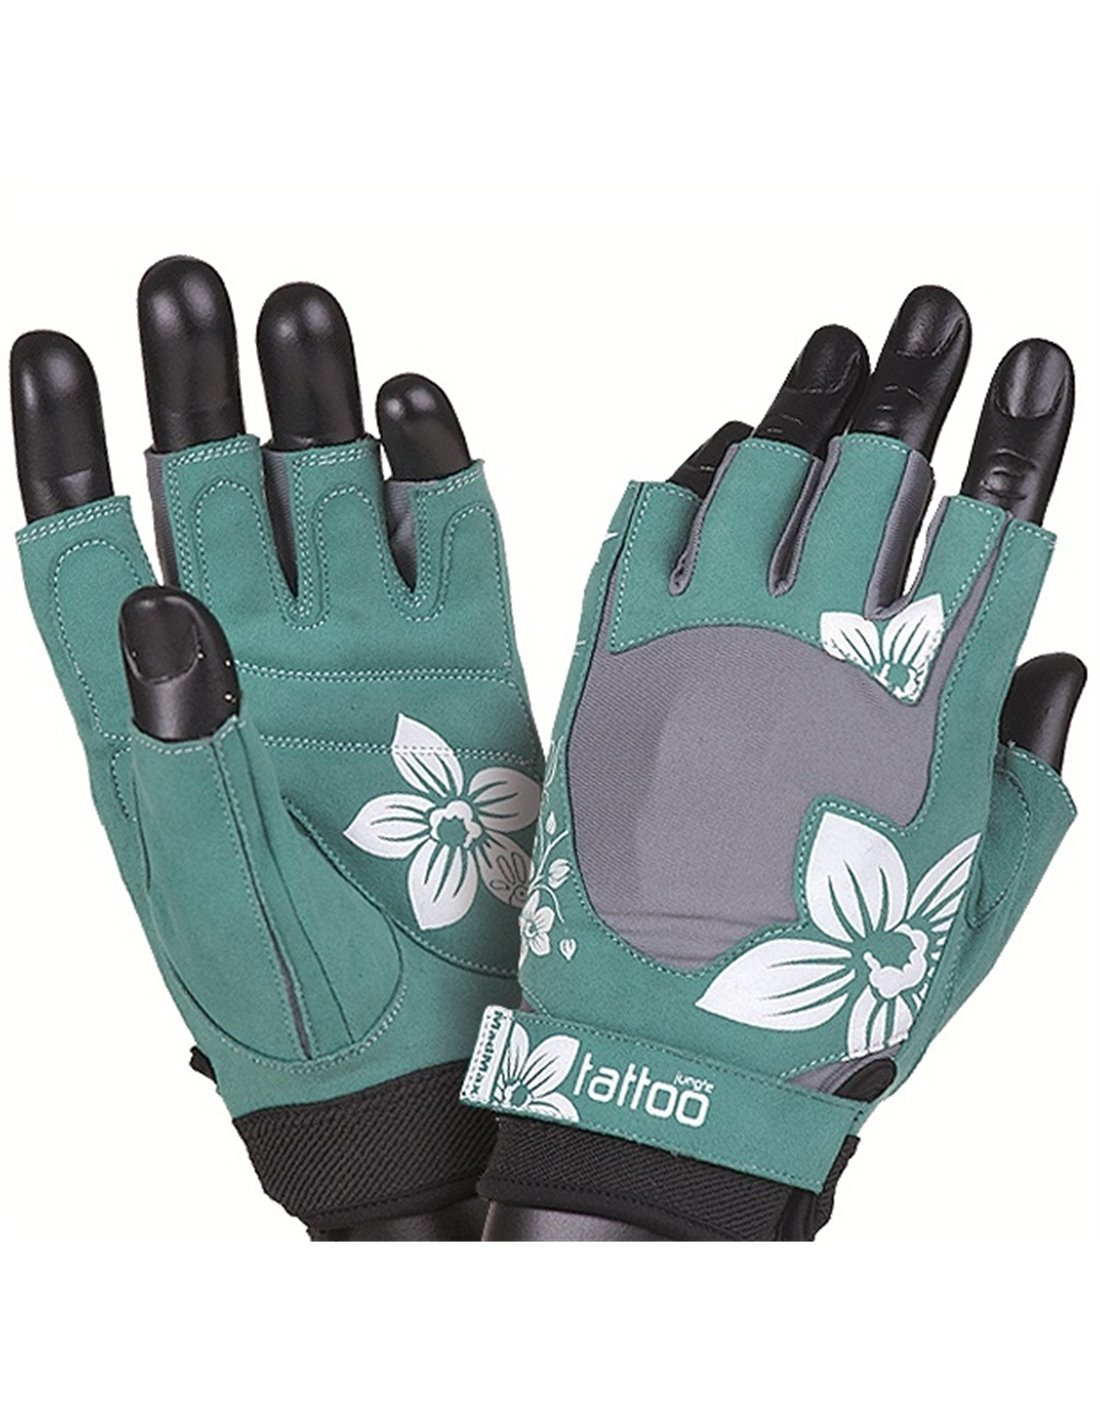 JUNGLE MFG 710 (S), 1 pcs, MadMax. Gloves. 